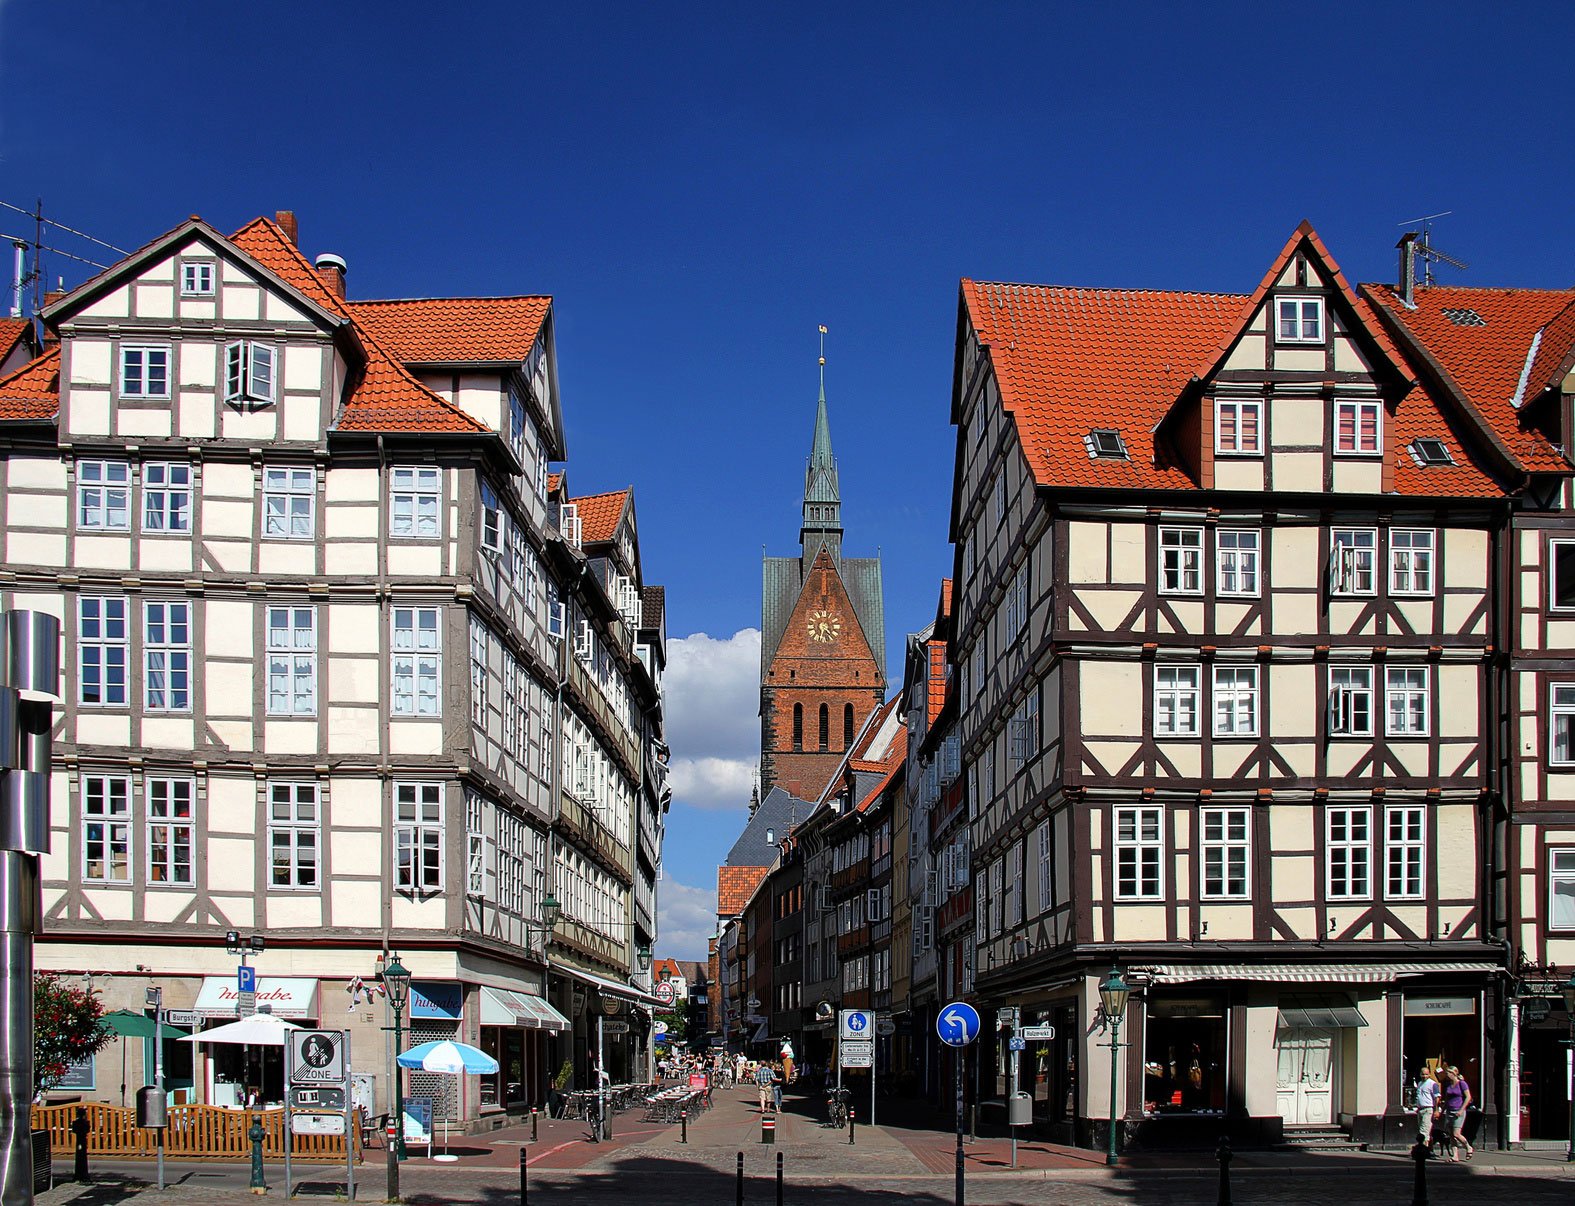 Fußgängerzone in Hannover mit Passantent und kleinen Läden